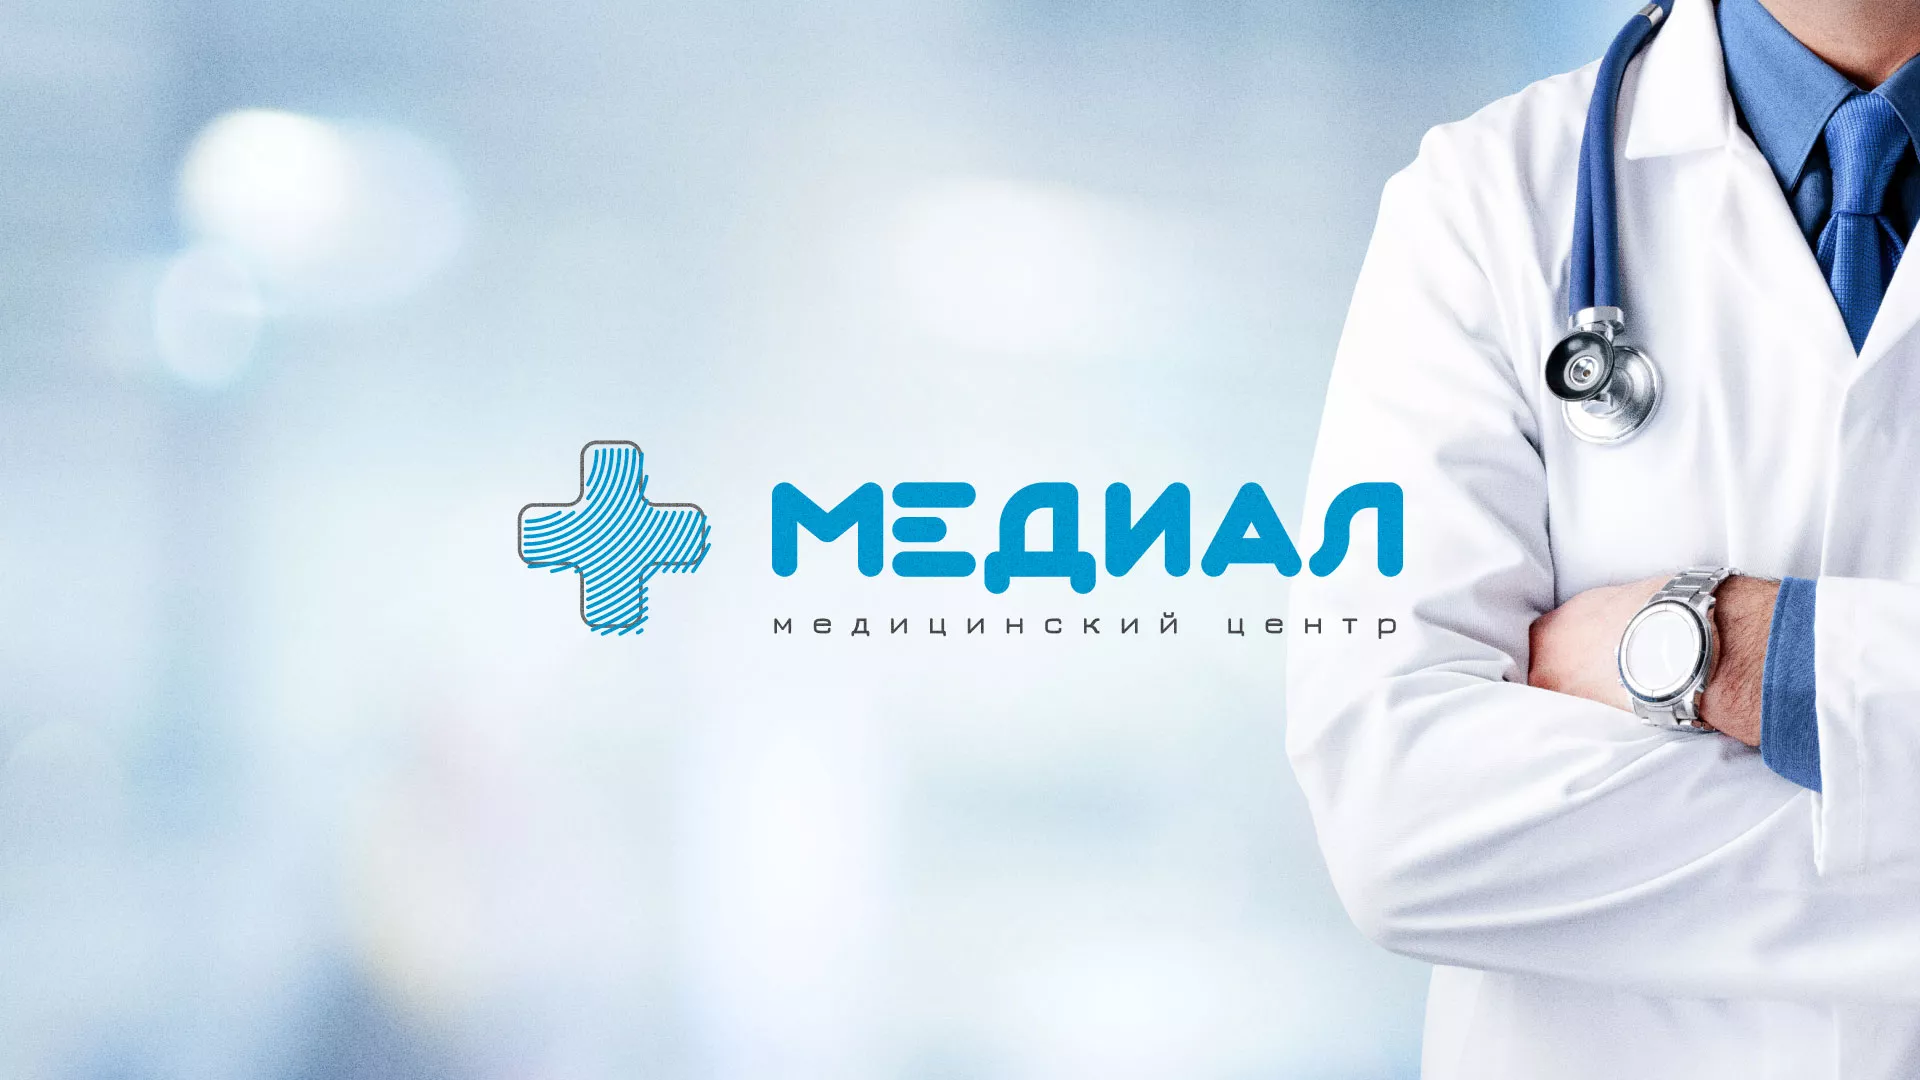 Создание сайта для медицинского центра «Медиал» в Костомукше